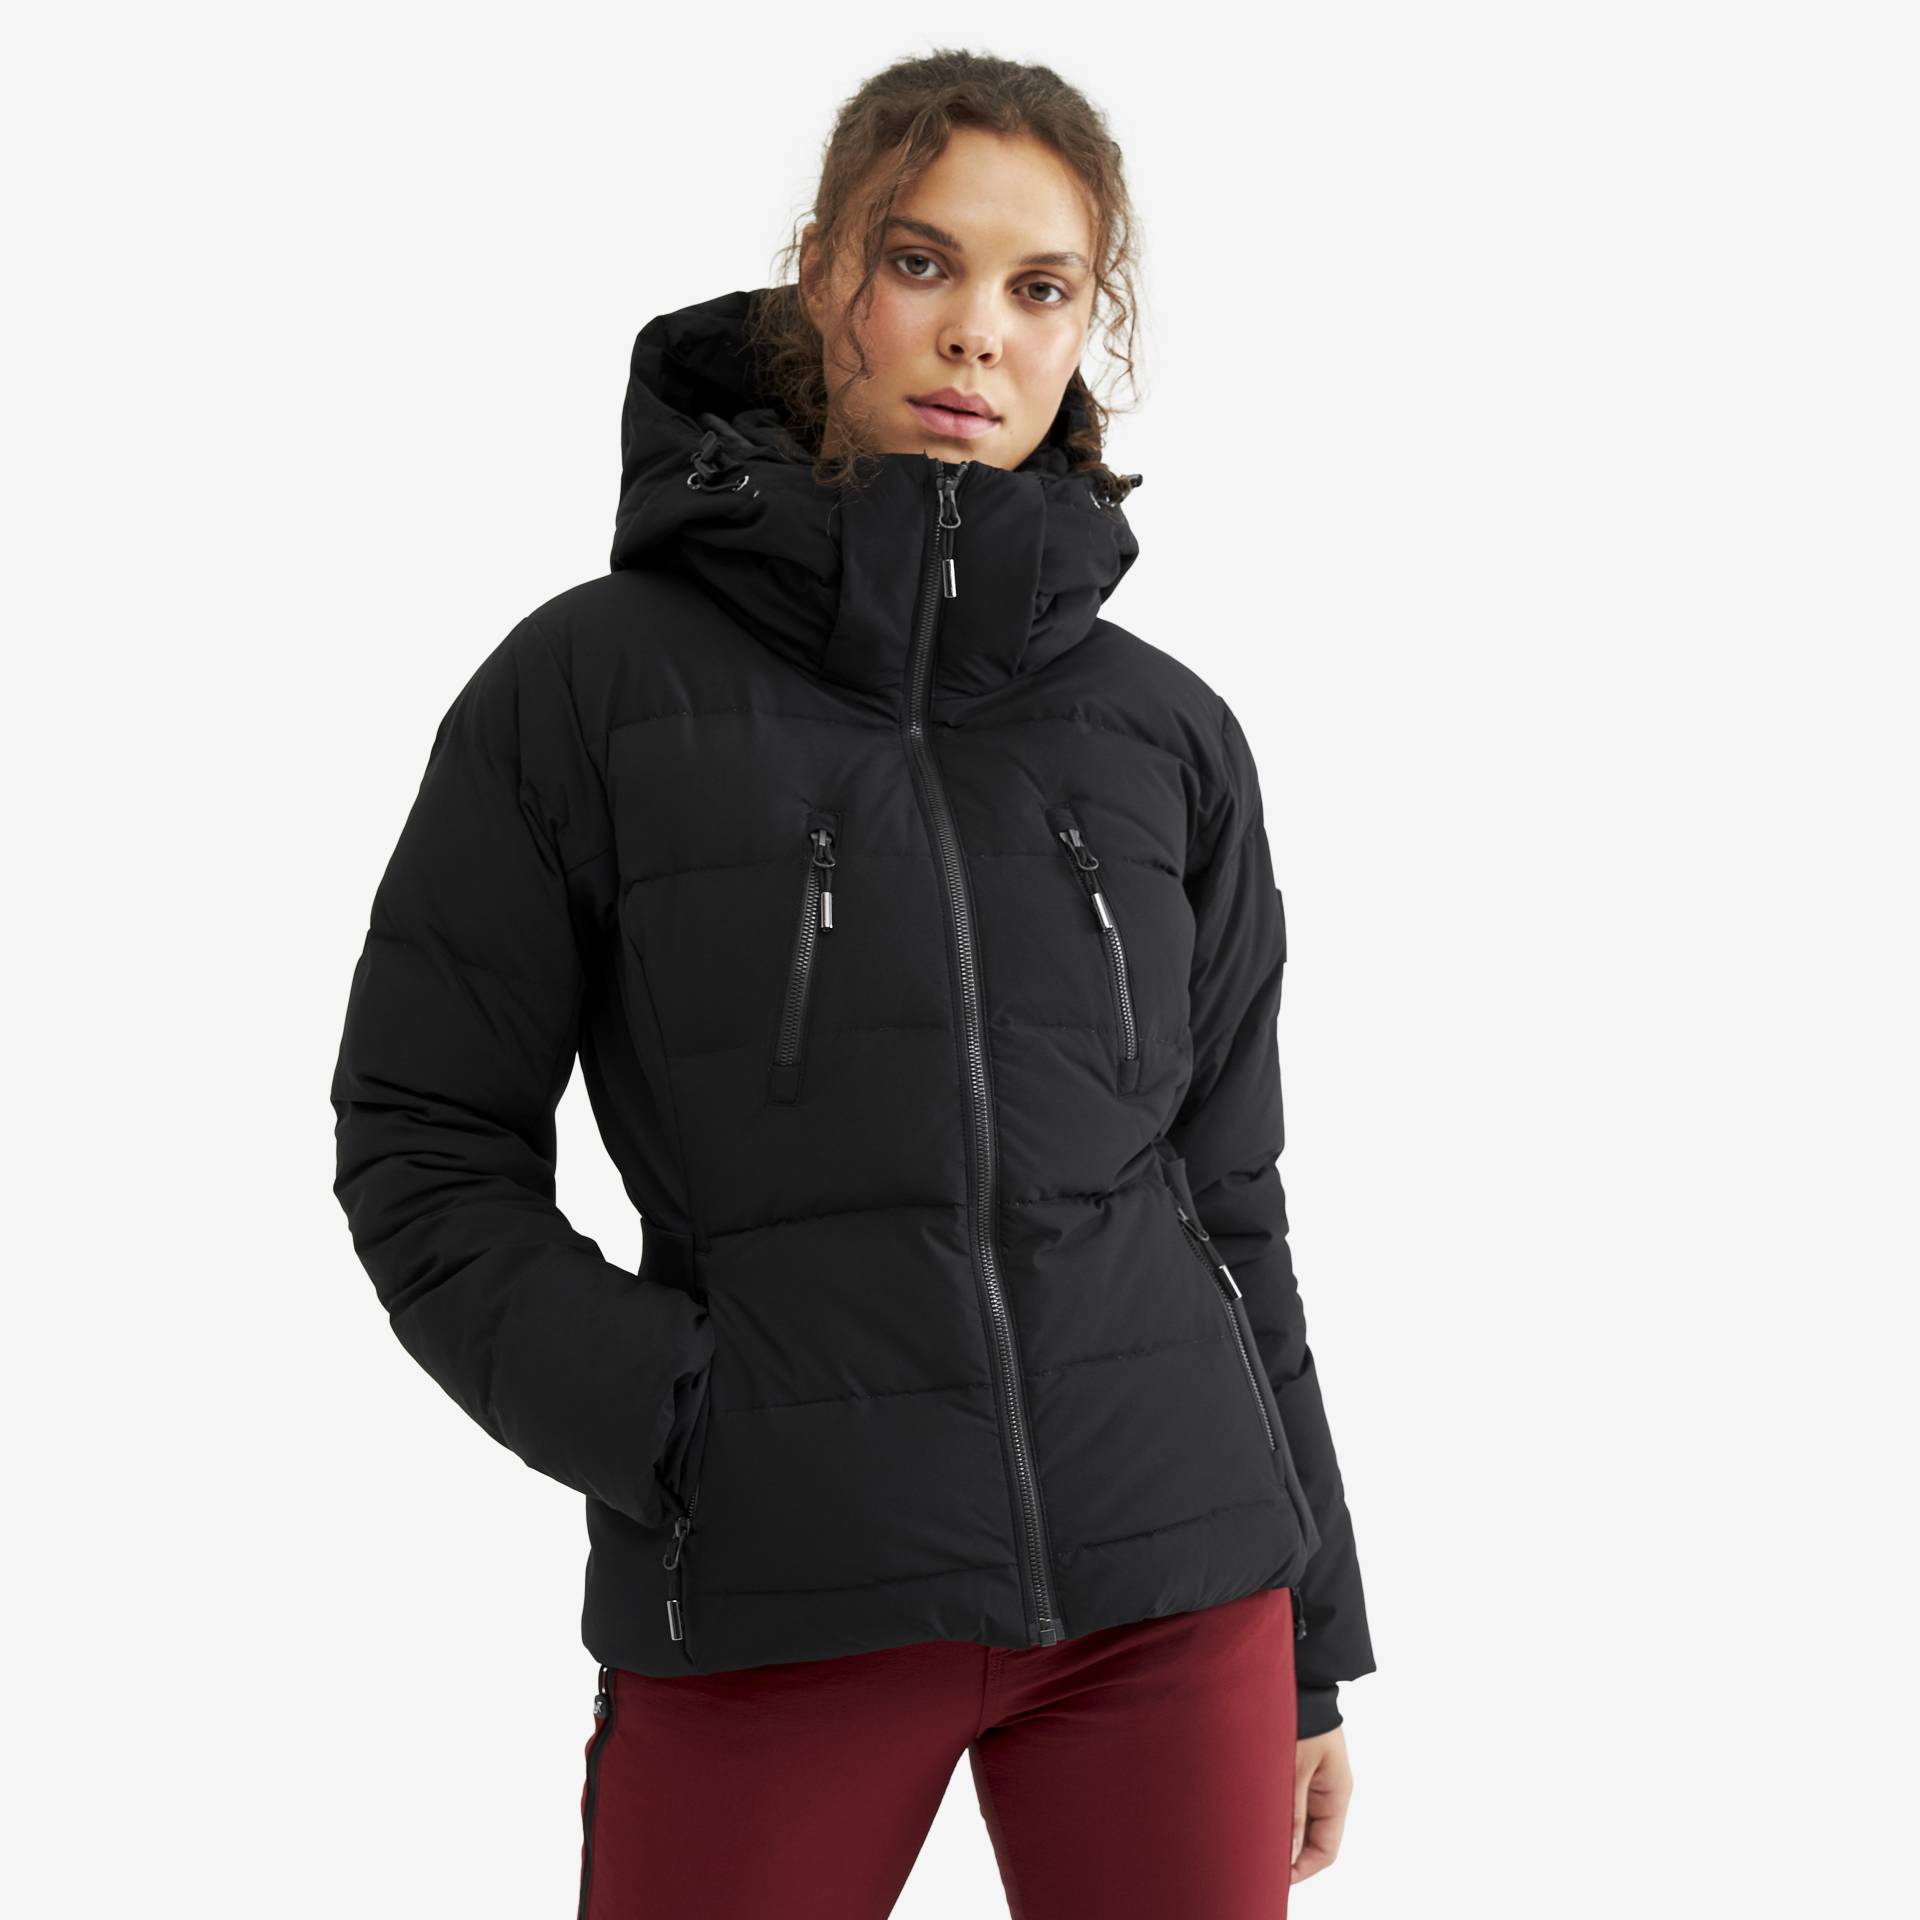 Igloo Jacket Damen Black, Größe:M - Skijacken von RevolutionRace